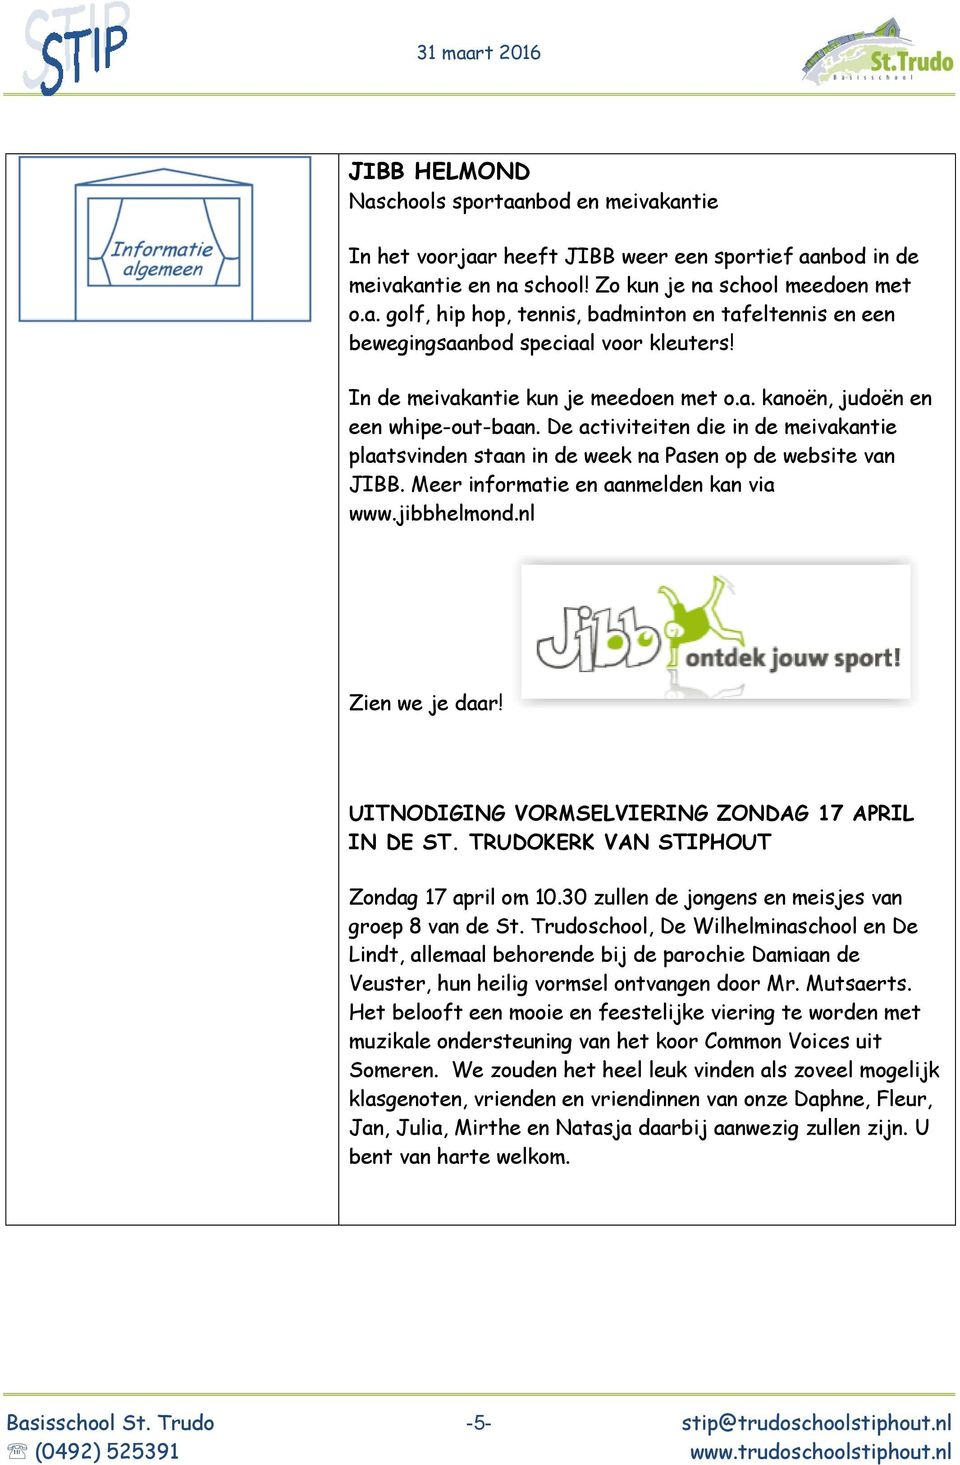 Meer informatie en aanmelden kan via www.jibbhelmond.nl Zien we je daar! UITNODIGING VORMSELVIERING ZONDAG 17 APRIL IN DE ST. TRUDOKERK VAN STIPHOUT Zondag 17 april om 10.